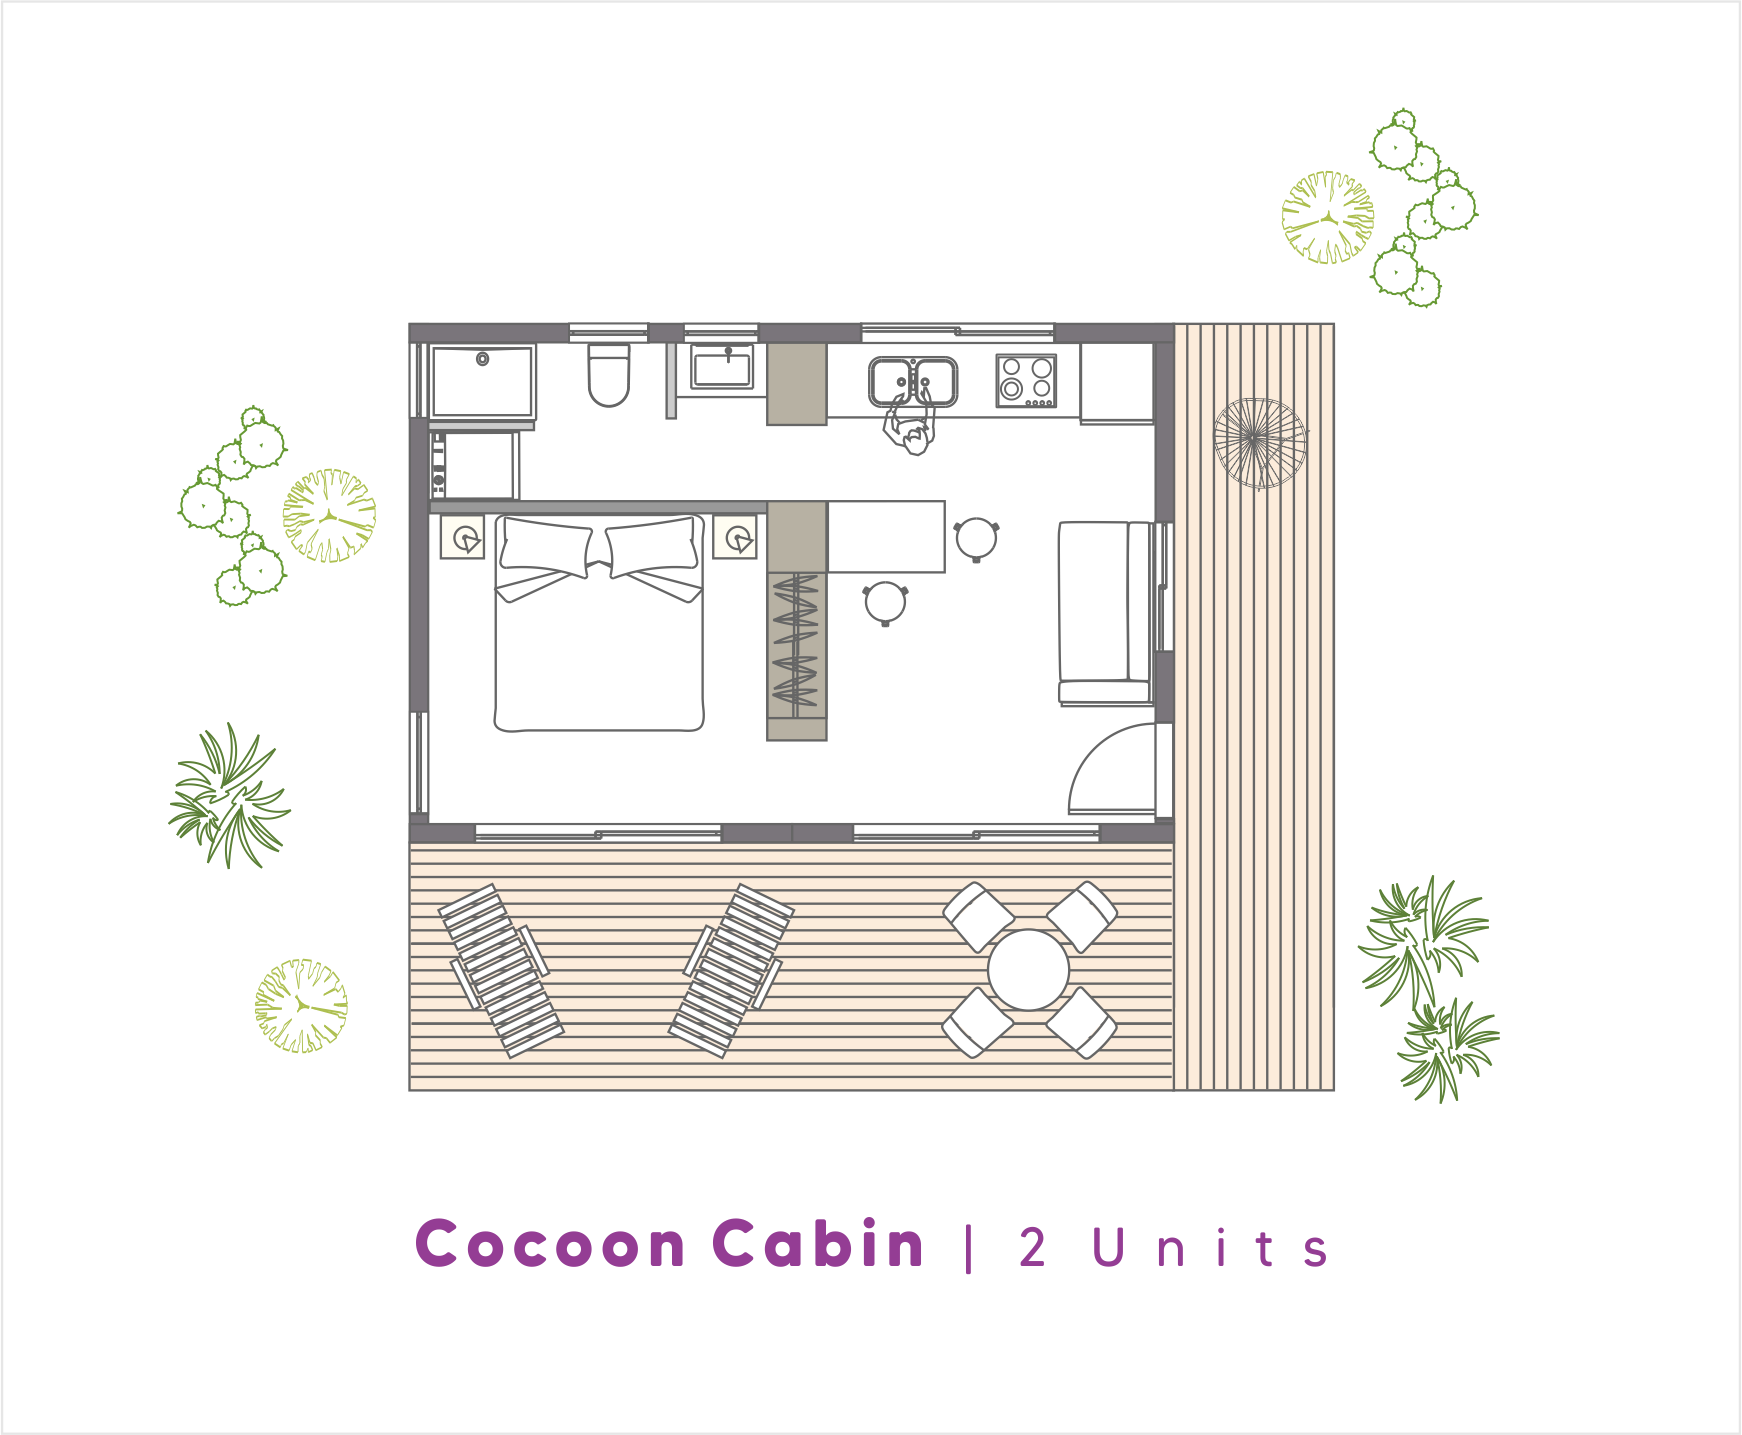 NoRootsHomes | Cocoon Cabin